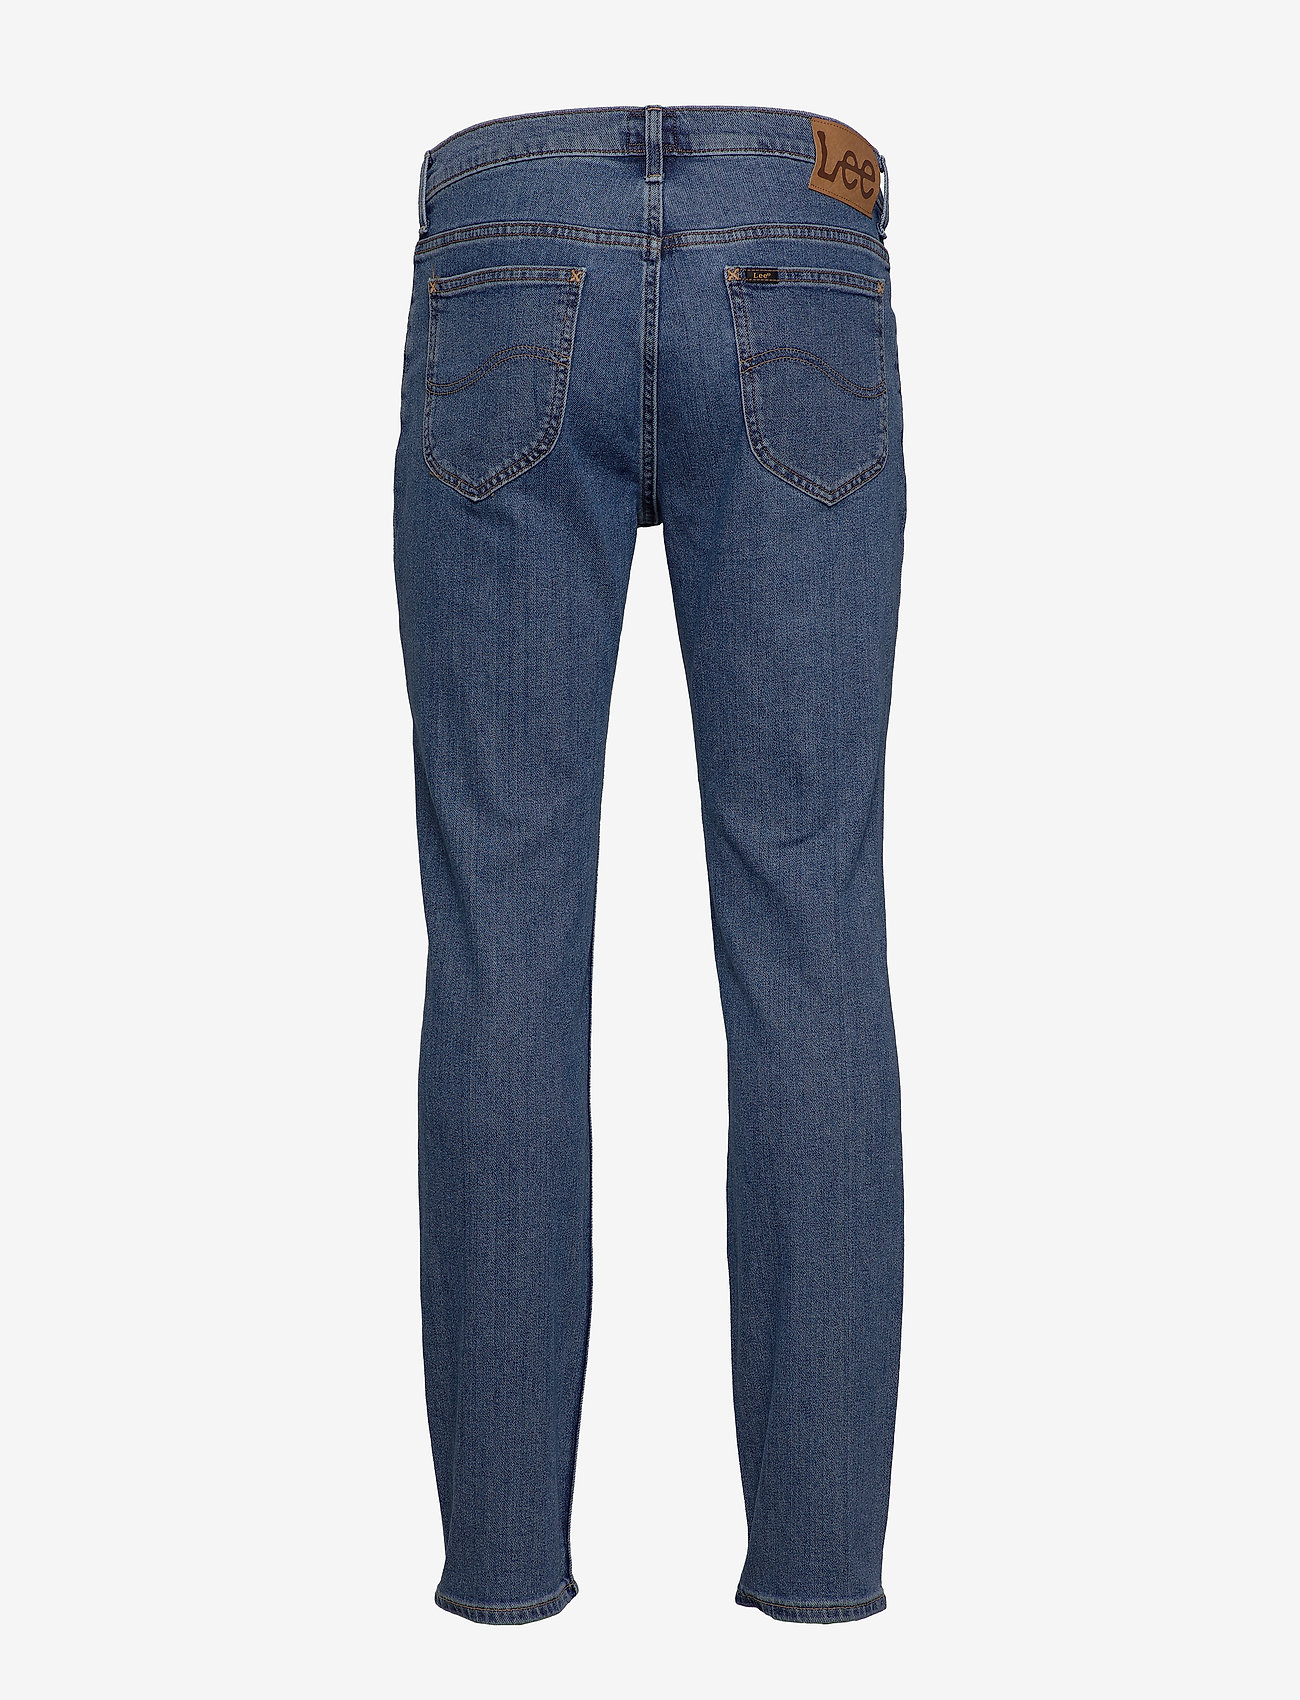 Lee Jeans - RIDER - Įprasto kirpimo džinsai - mid stone - 1